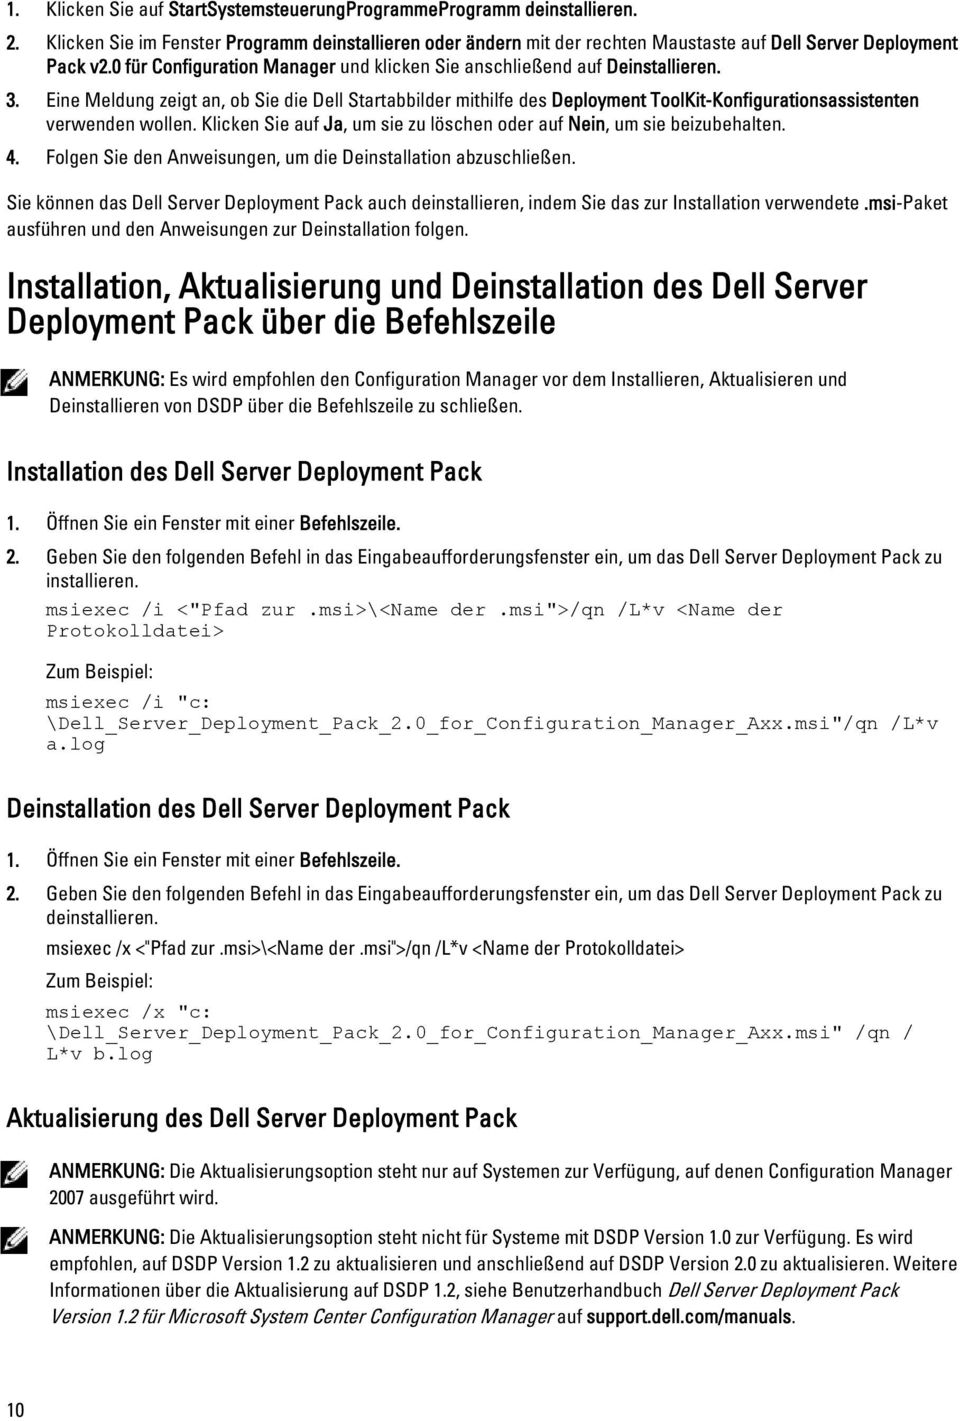 Eine Meldung zeigt an, ob Sie die Dell Startabbilder mithilfe des Deployment ToolKit-Konfigurationsassistenten verwenden wollen.